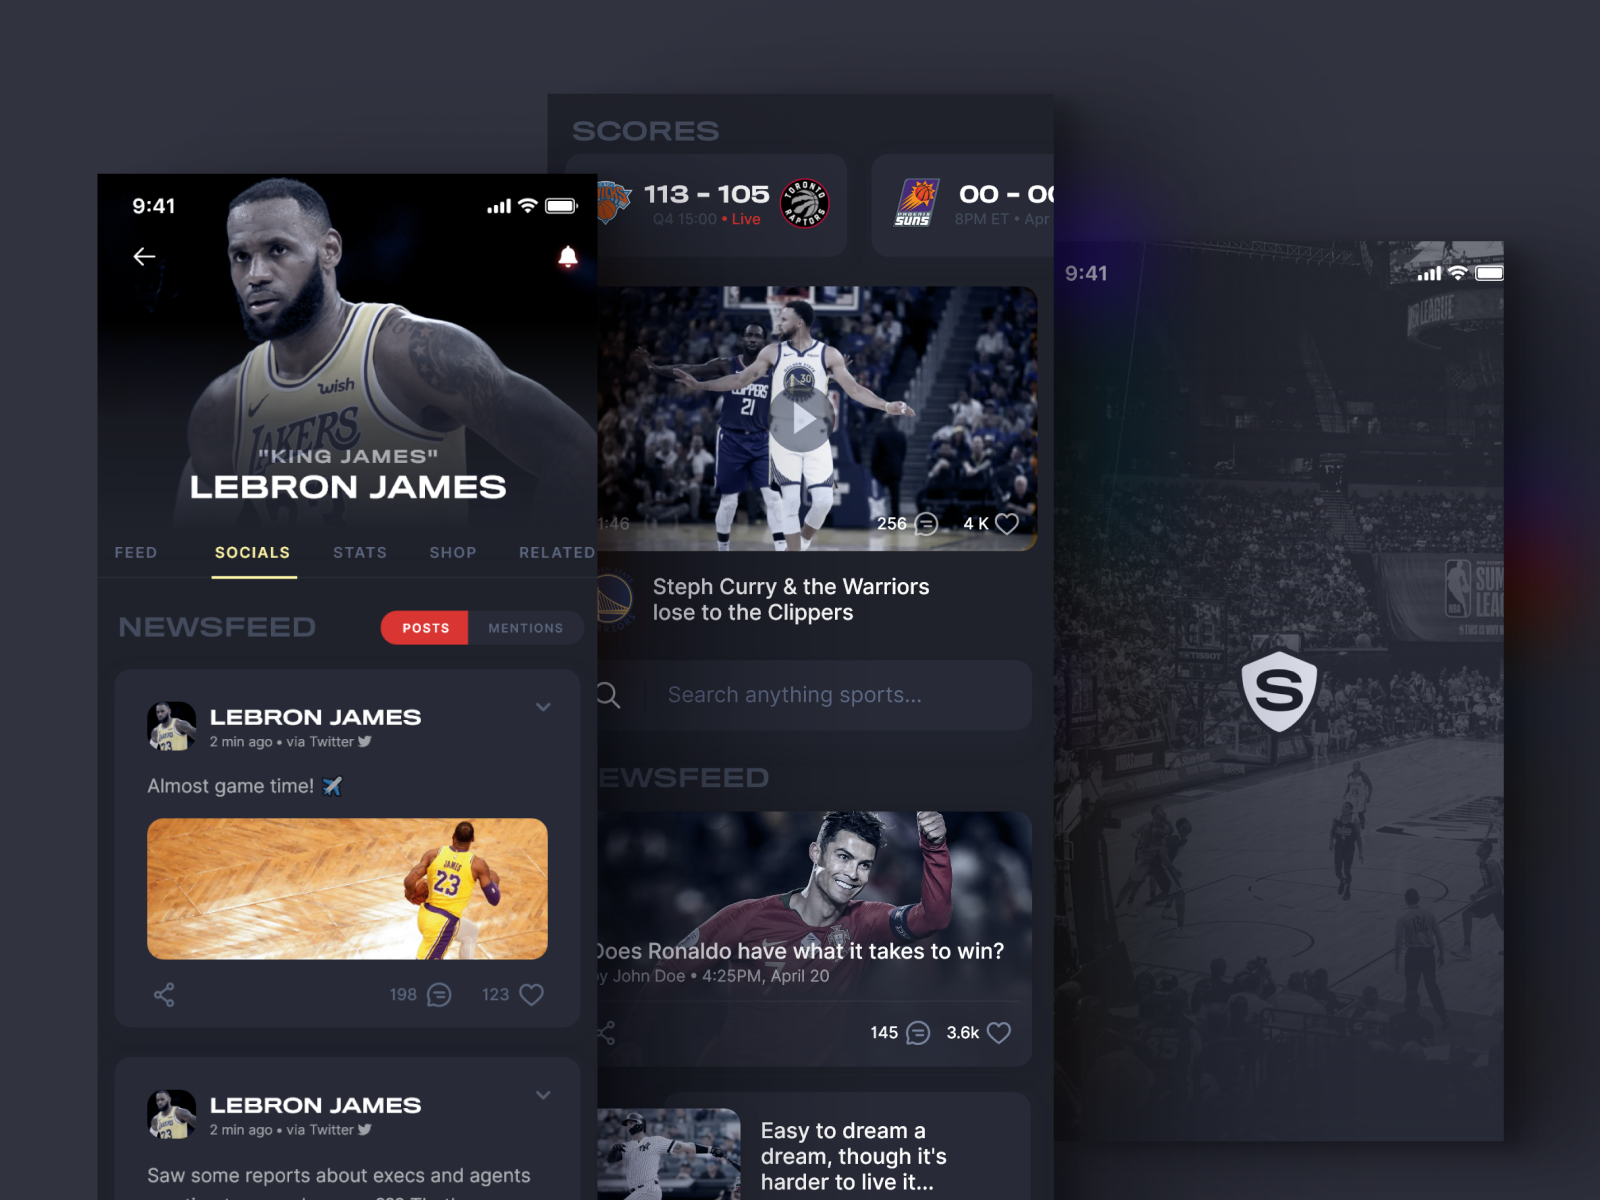 Sports News/Media App UI - Live Scores, Games, Articles, & more | VIP Graphics